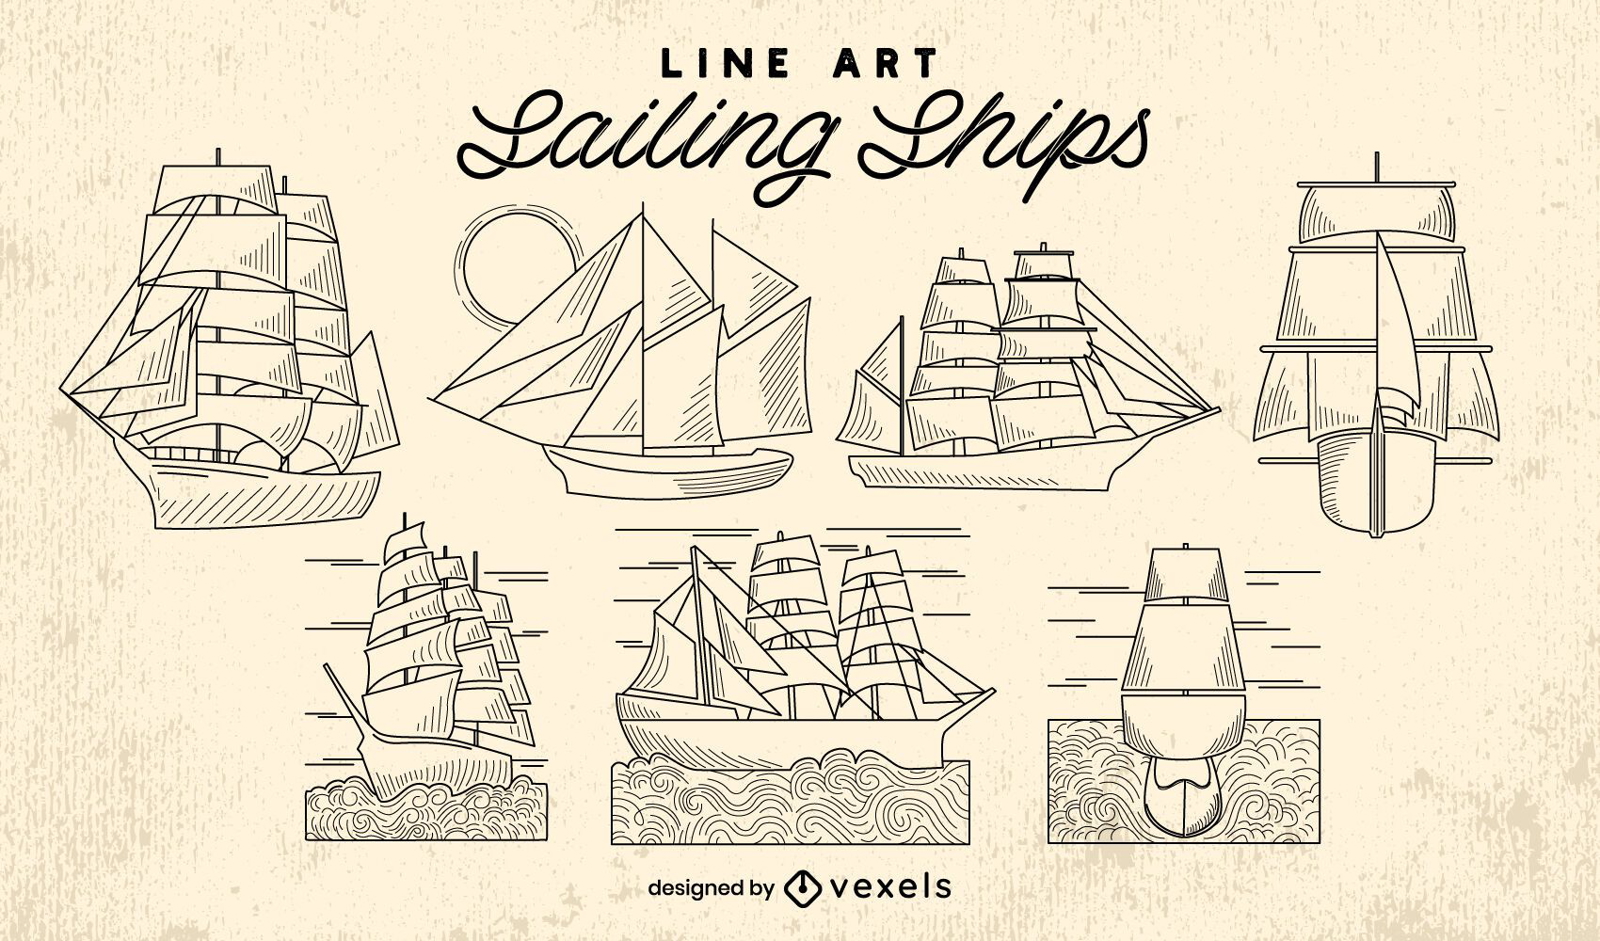 Velero barcos ocean line art set